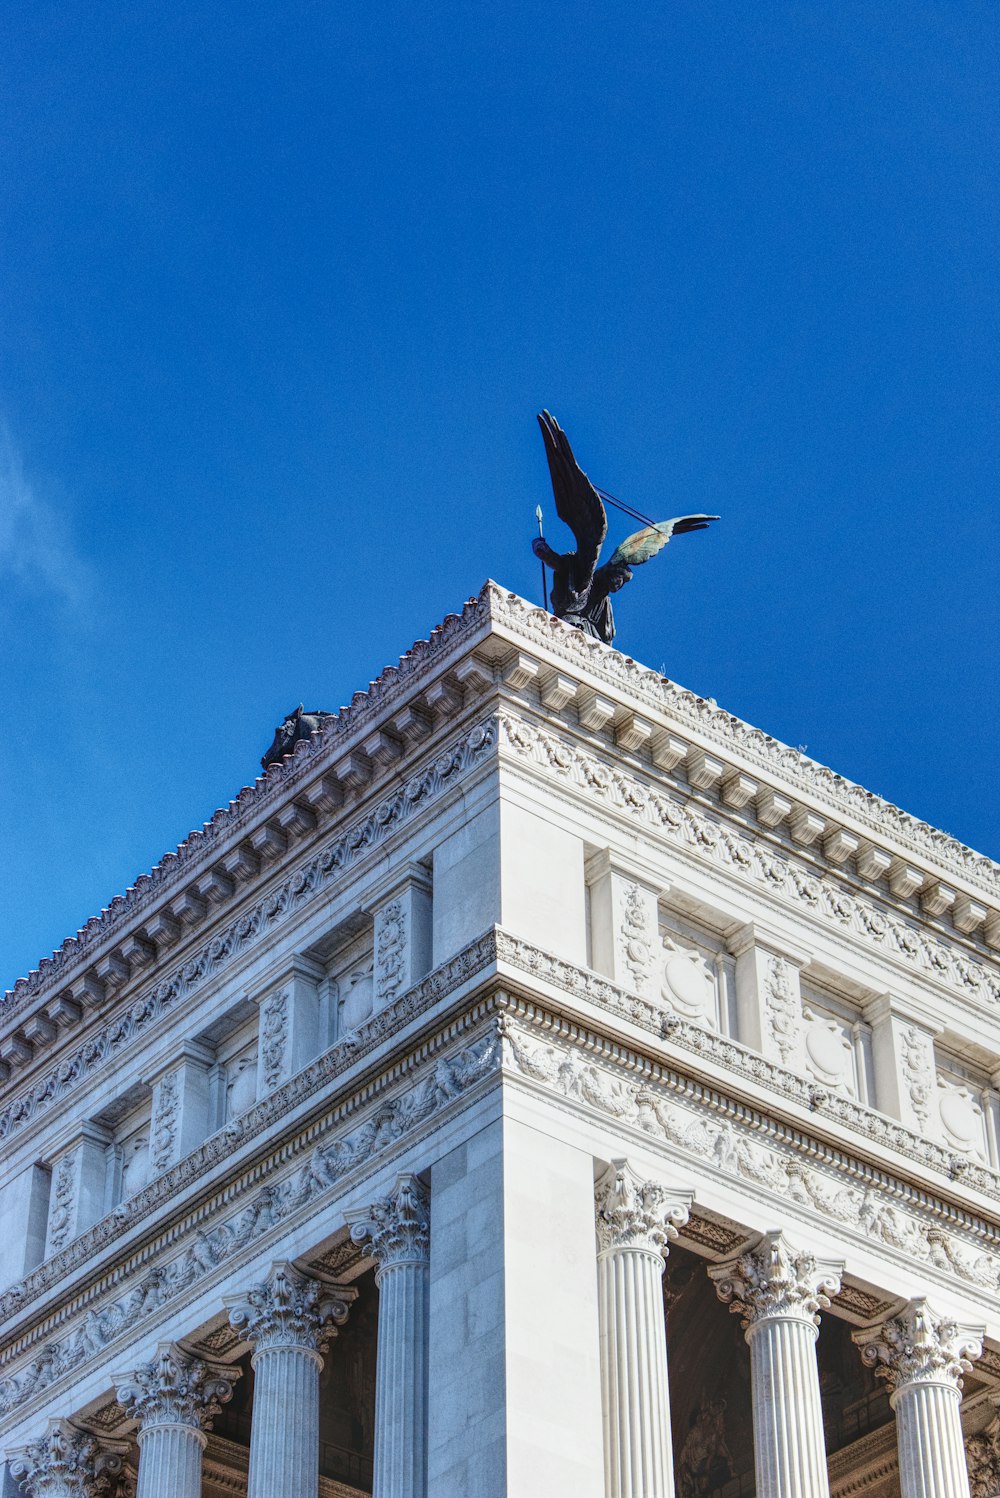 oiseau noir volant au-dessus d’un bâtiment en béton blanc pendant la journée